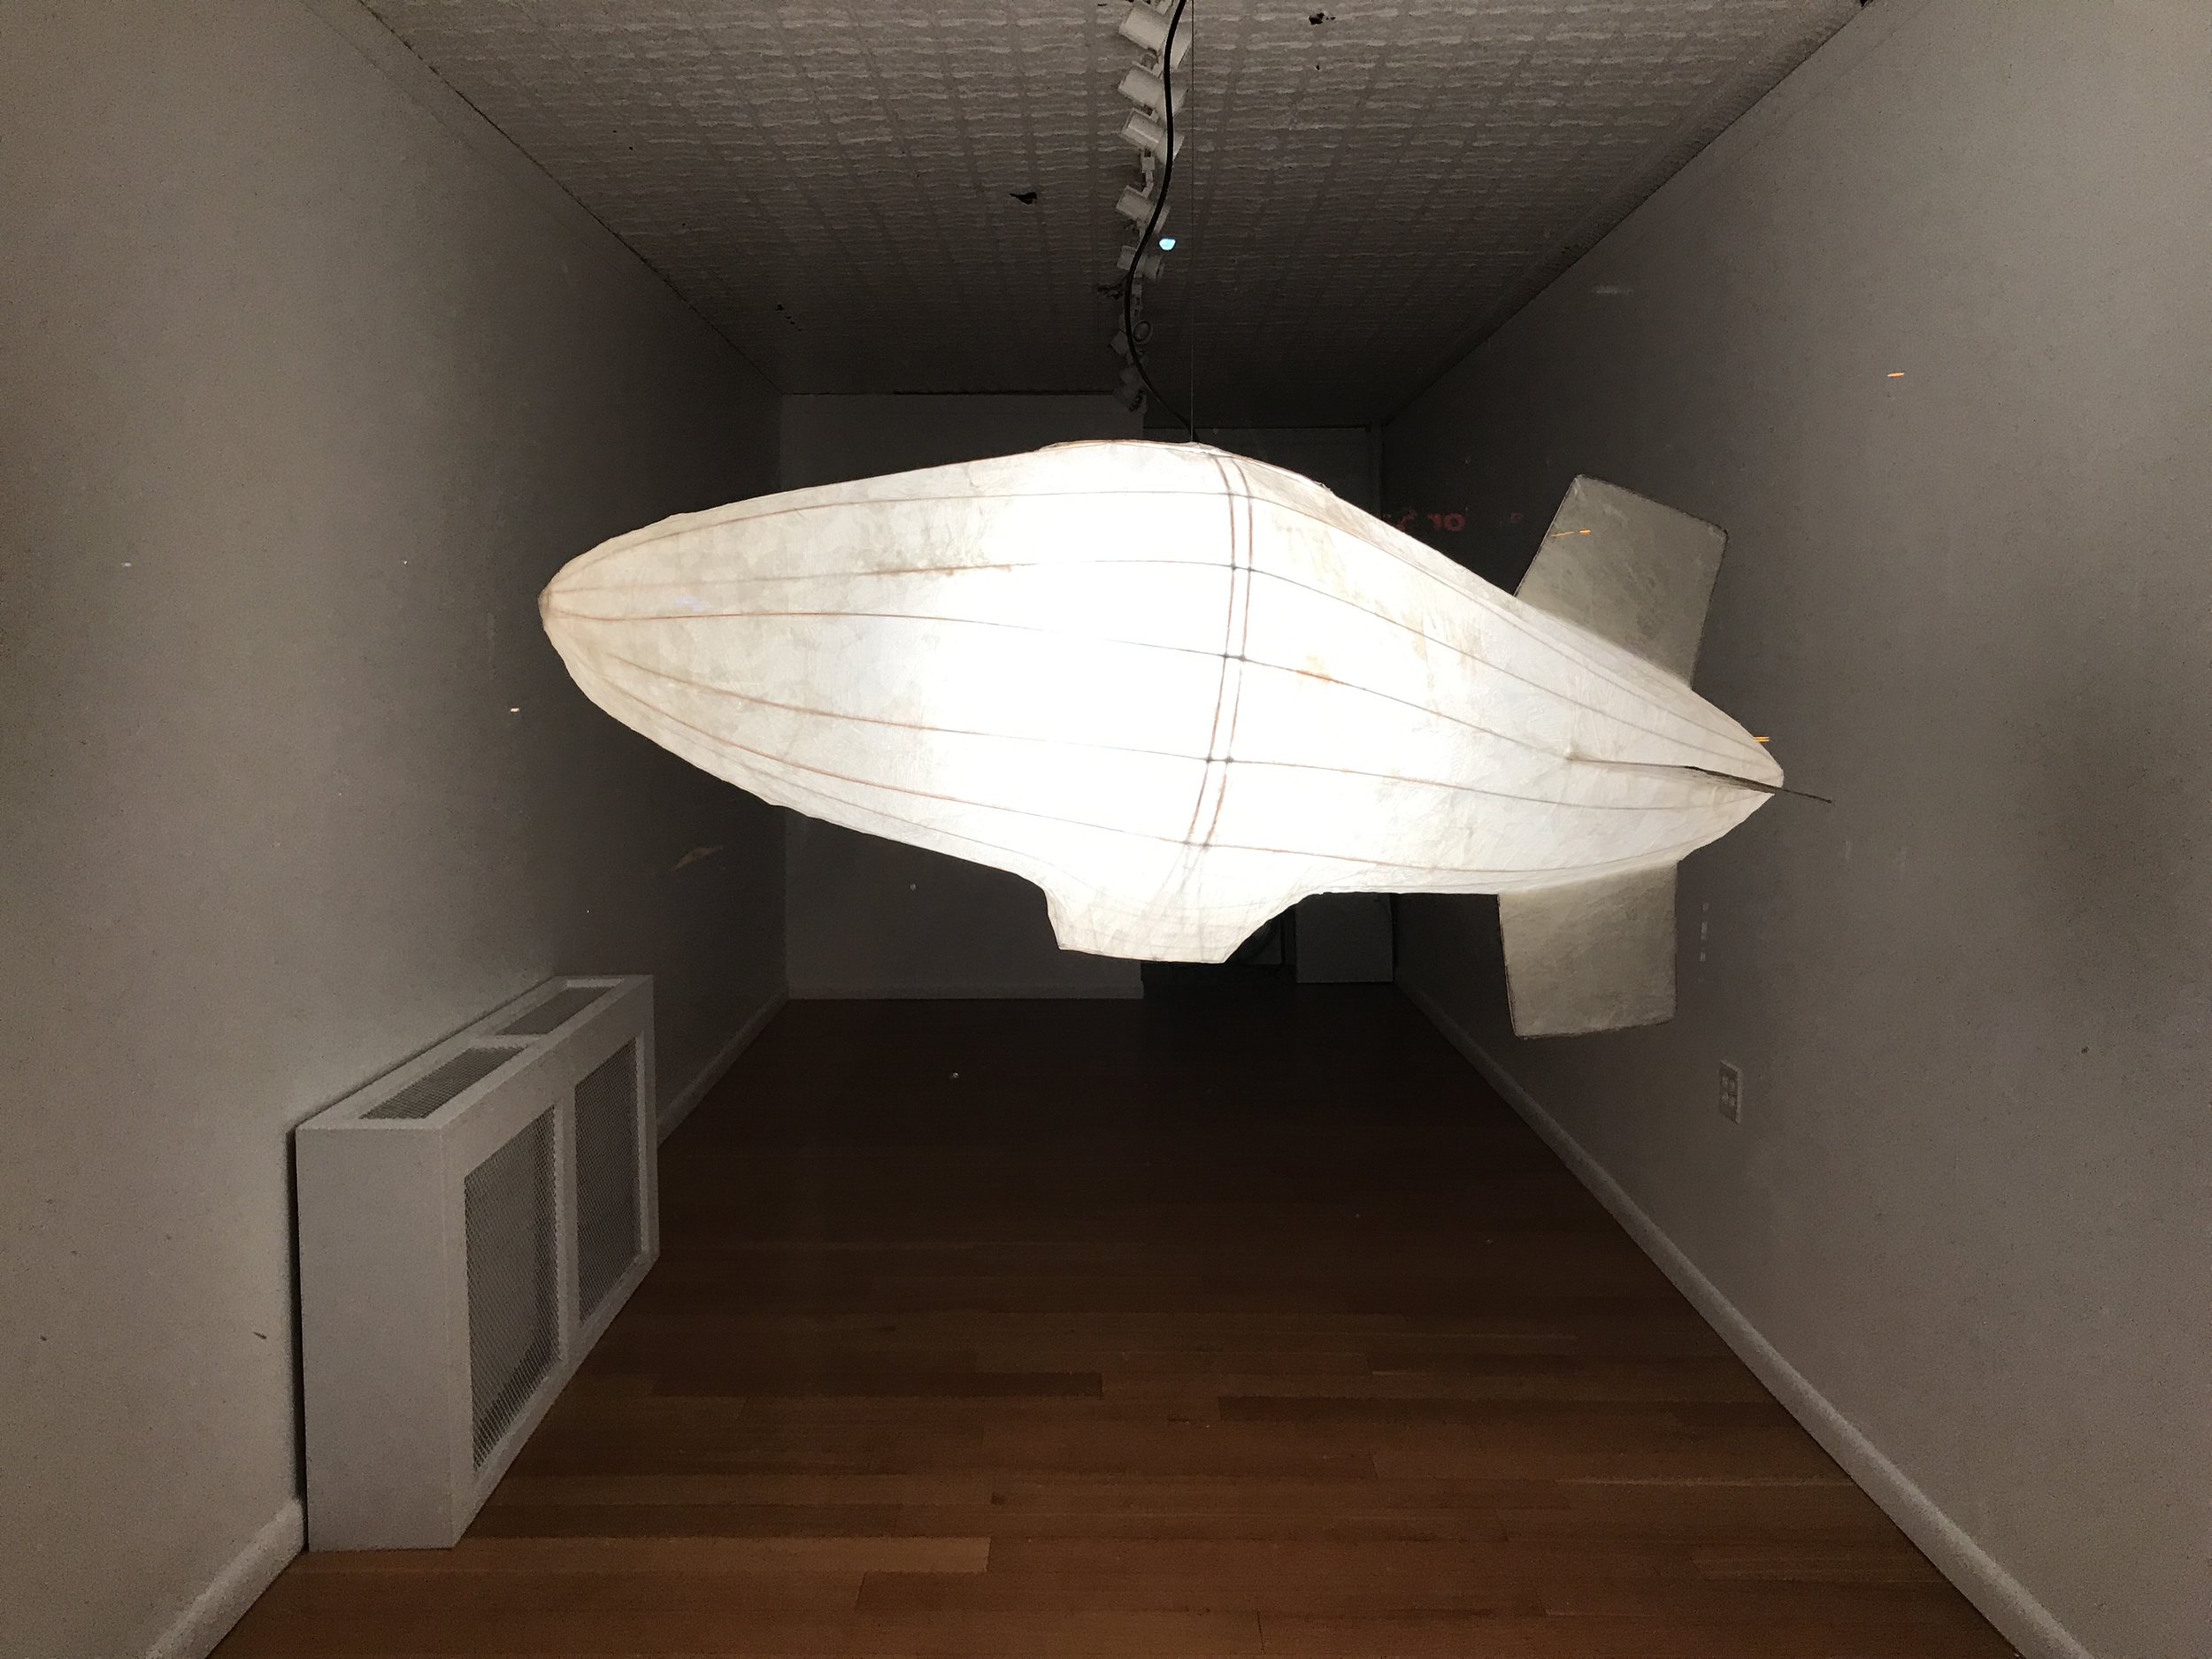 Pedro Villalta: Zeppelin Lamp